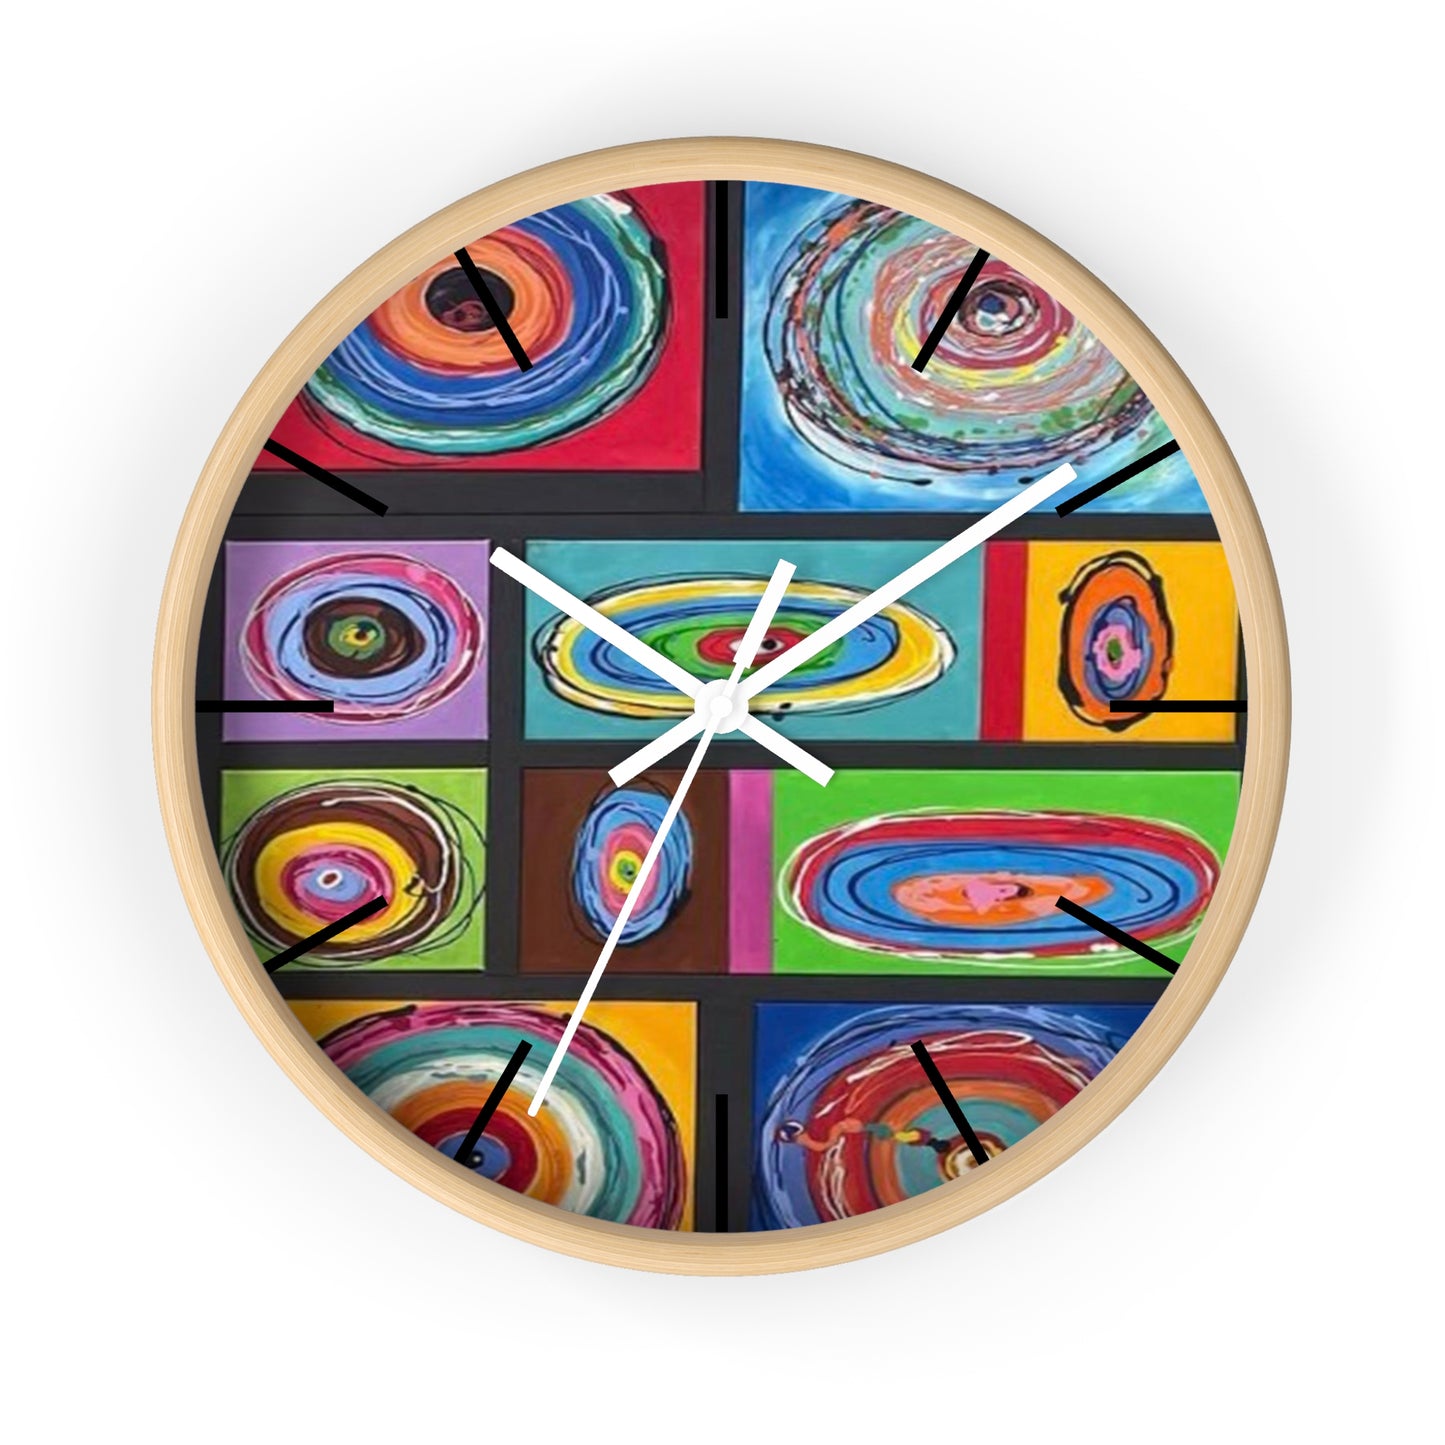 Circle of Life Wall Clock